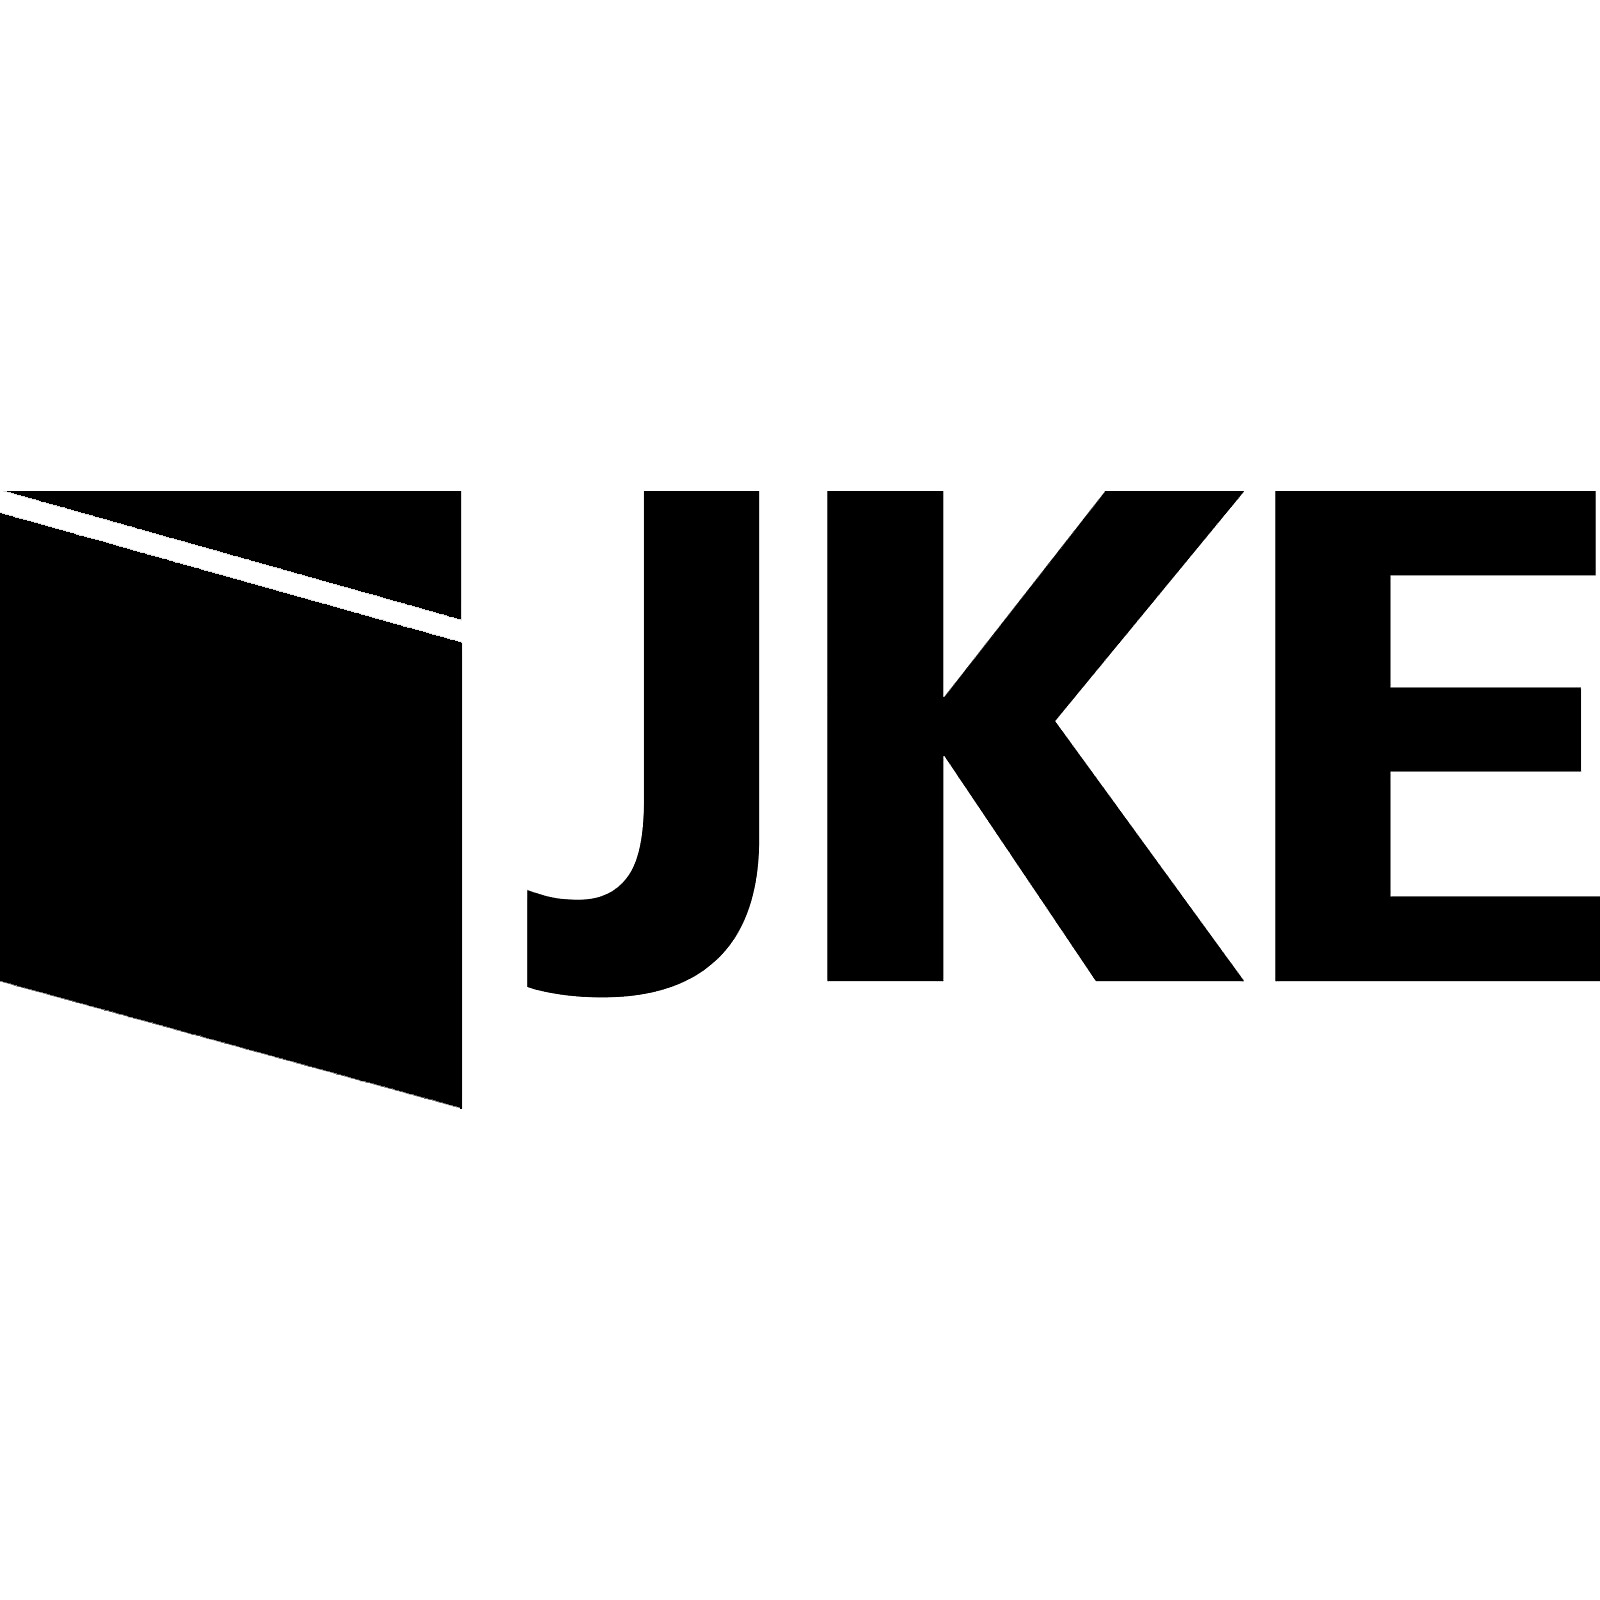 JKE logo